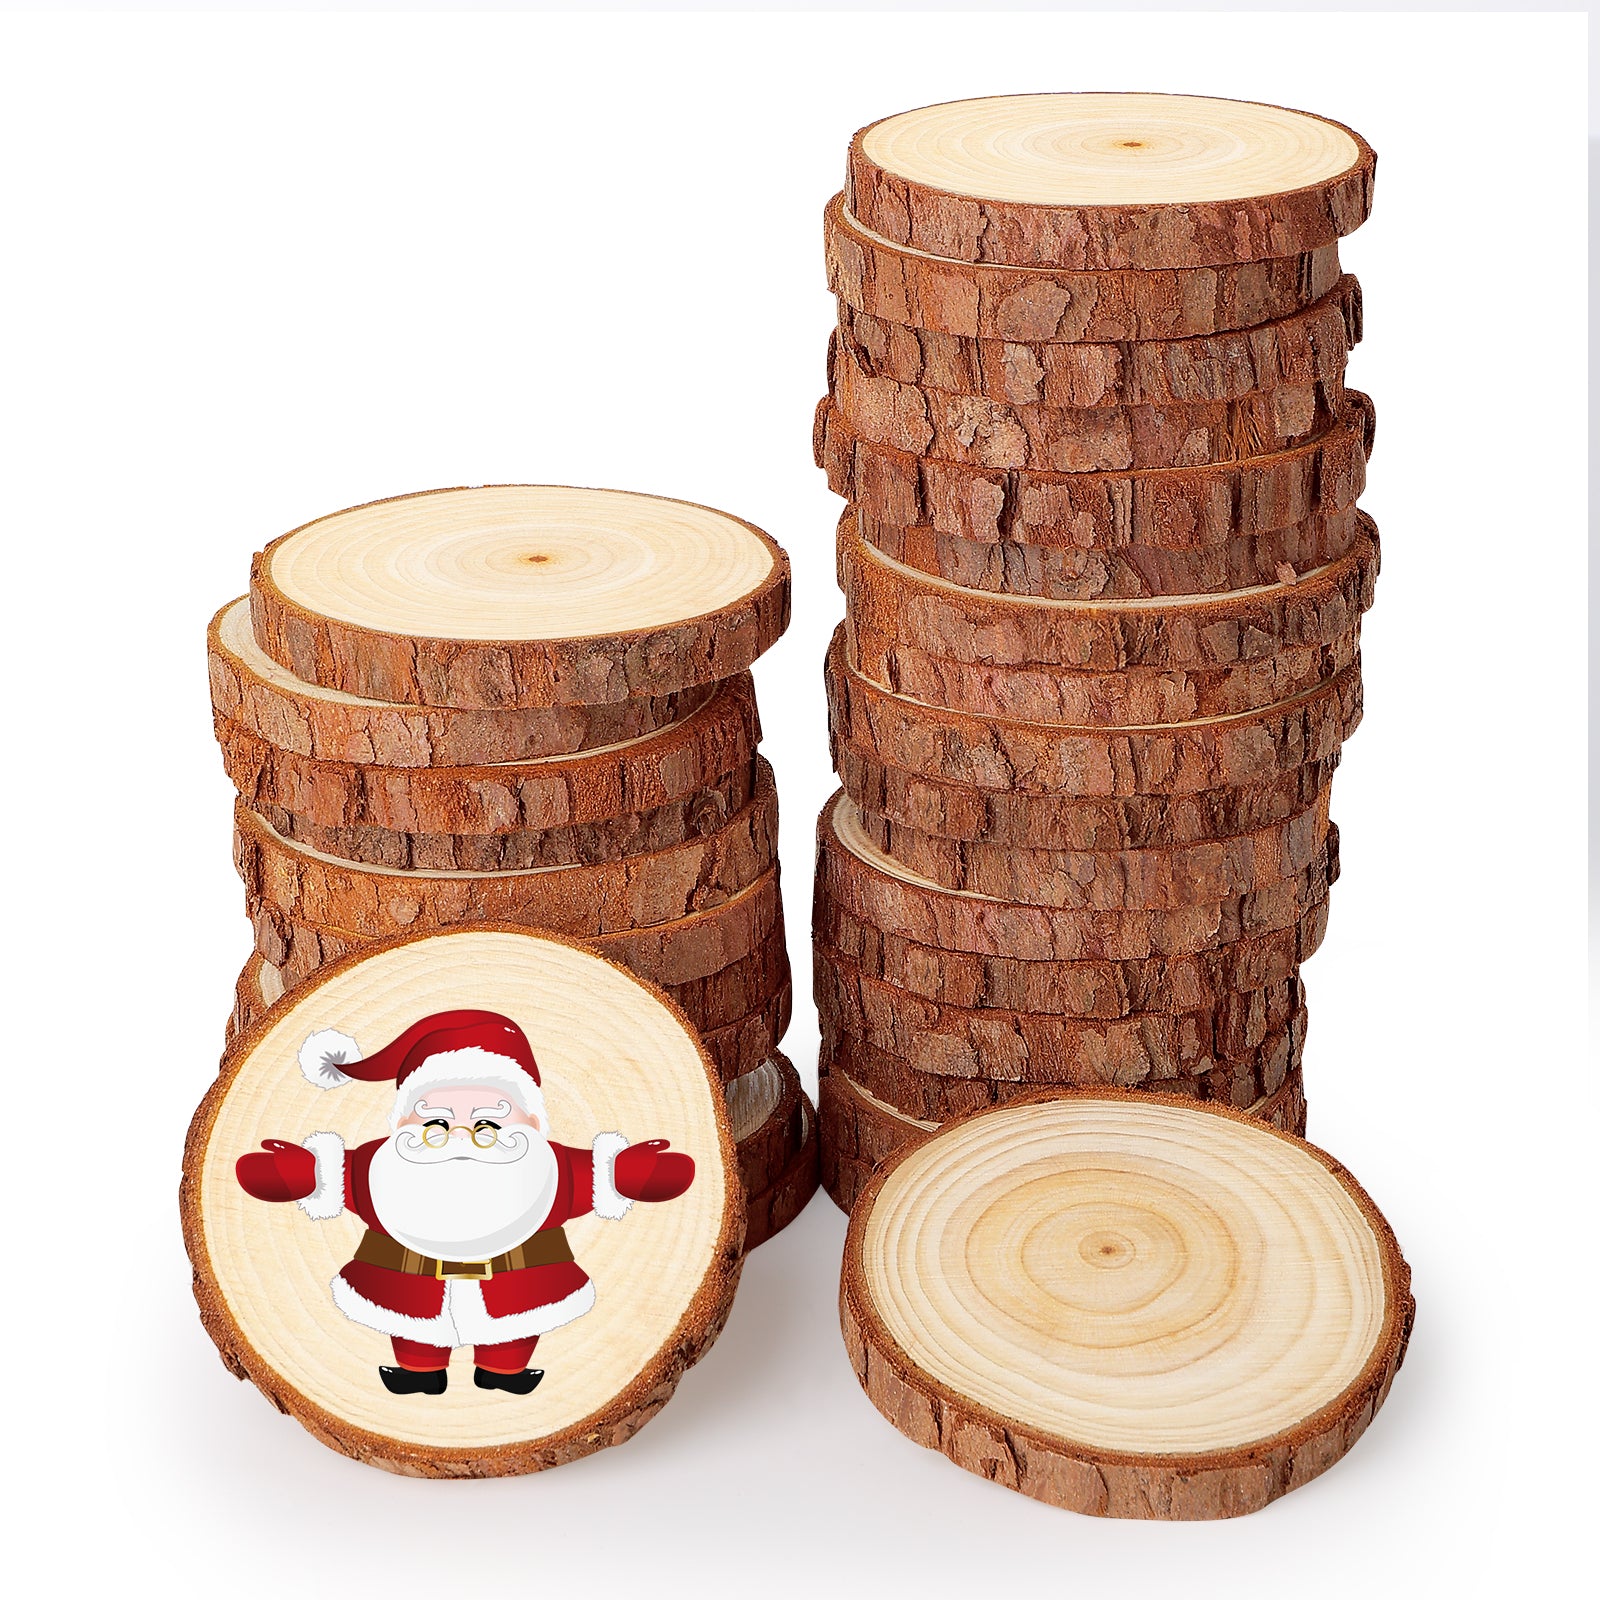 SOLEDI Wood Slices for Crafts Diameter 6-7 cm(30 Pcs)